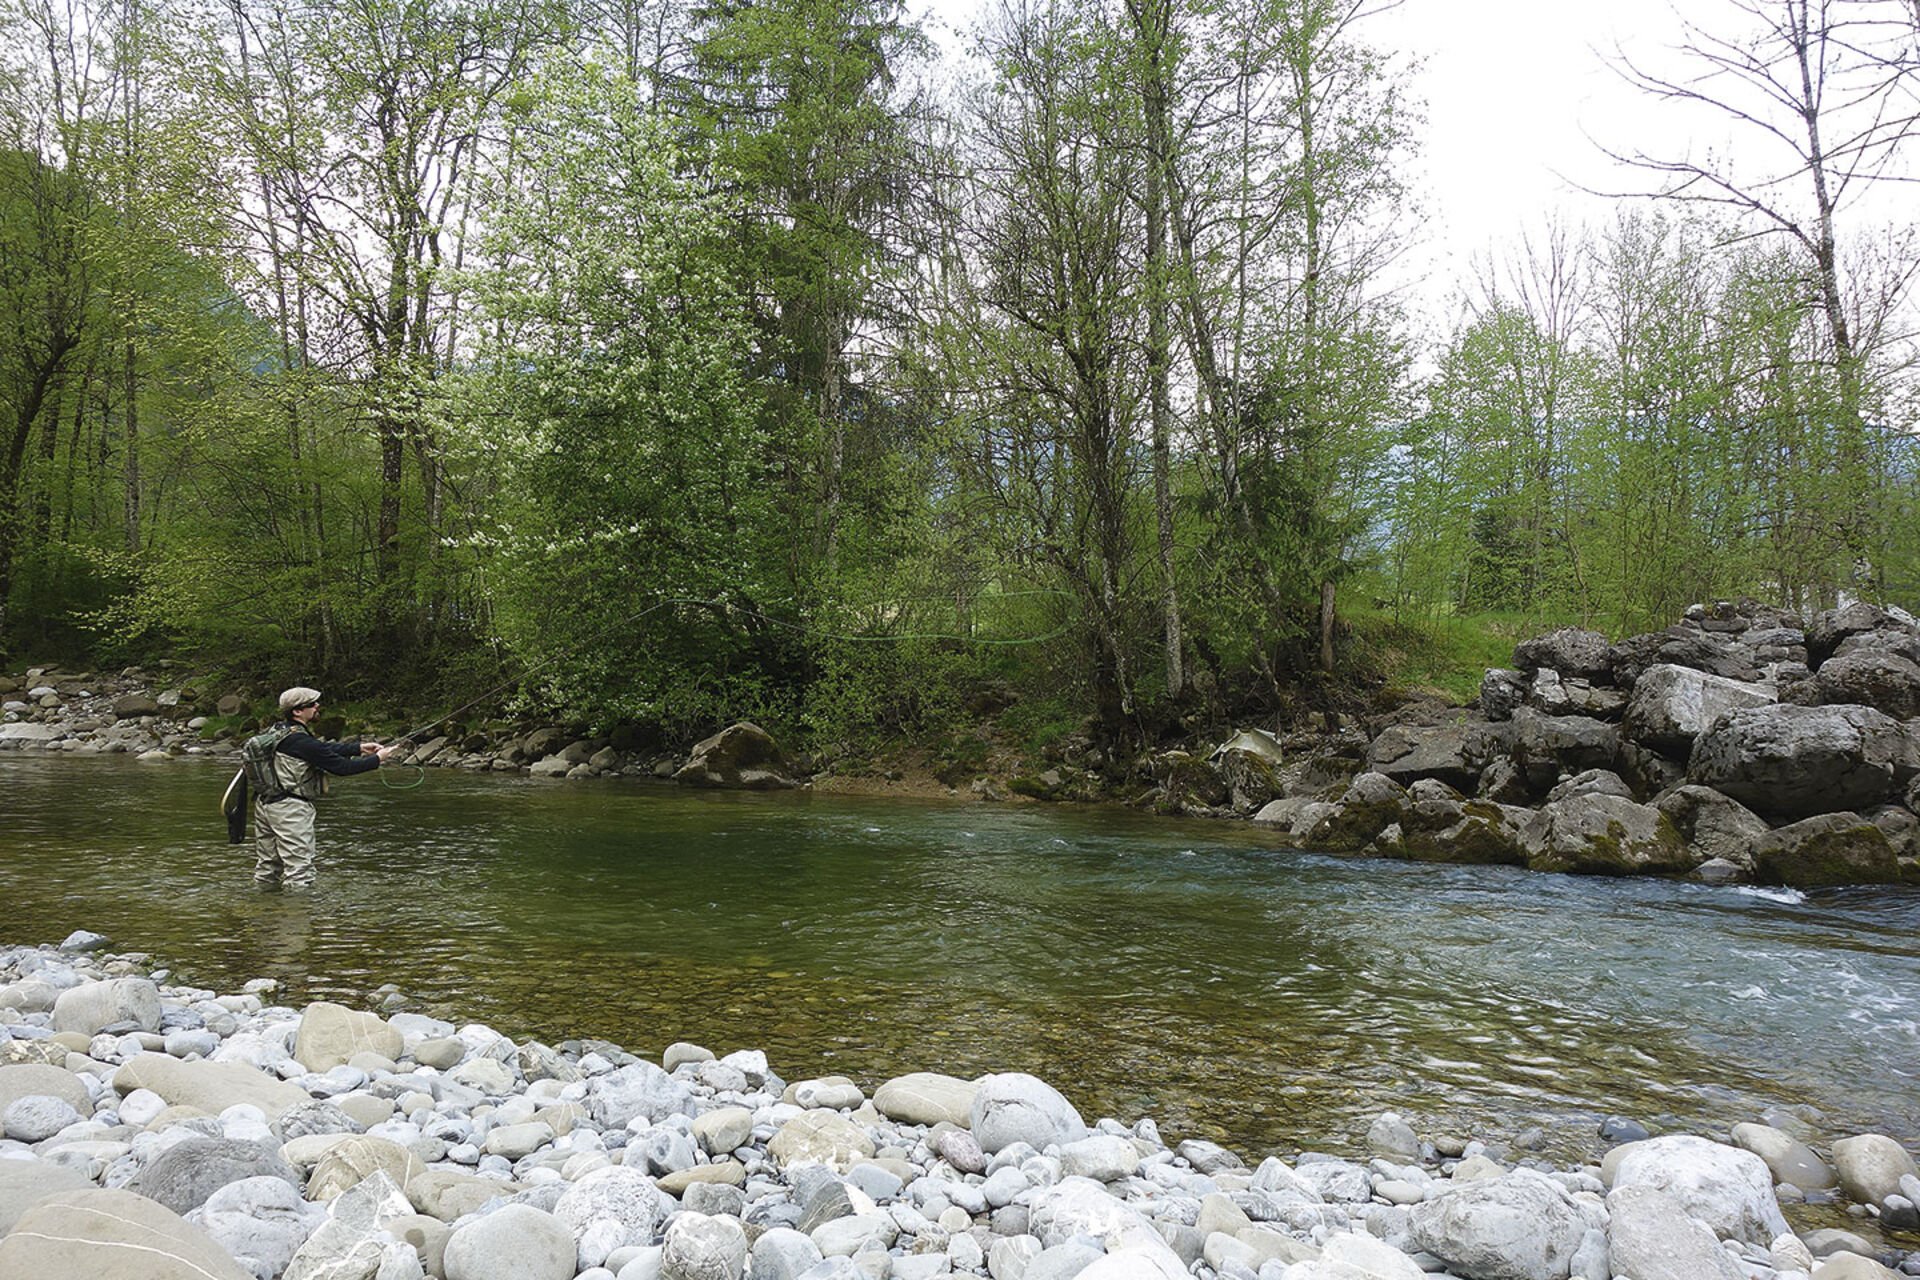  Naturnahe Flüsse und ein guter Fischbestand erwarten Fliegenfischer im Bregenzerwald.  